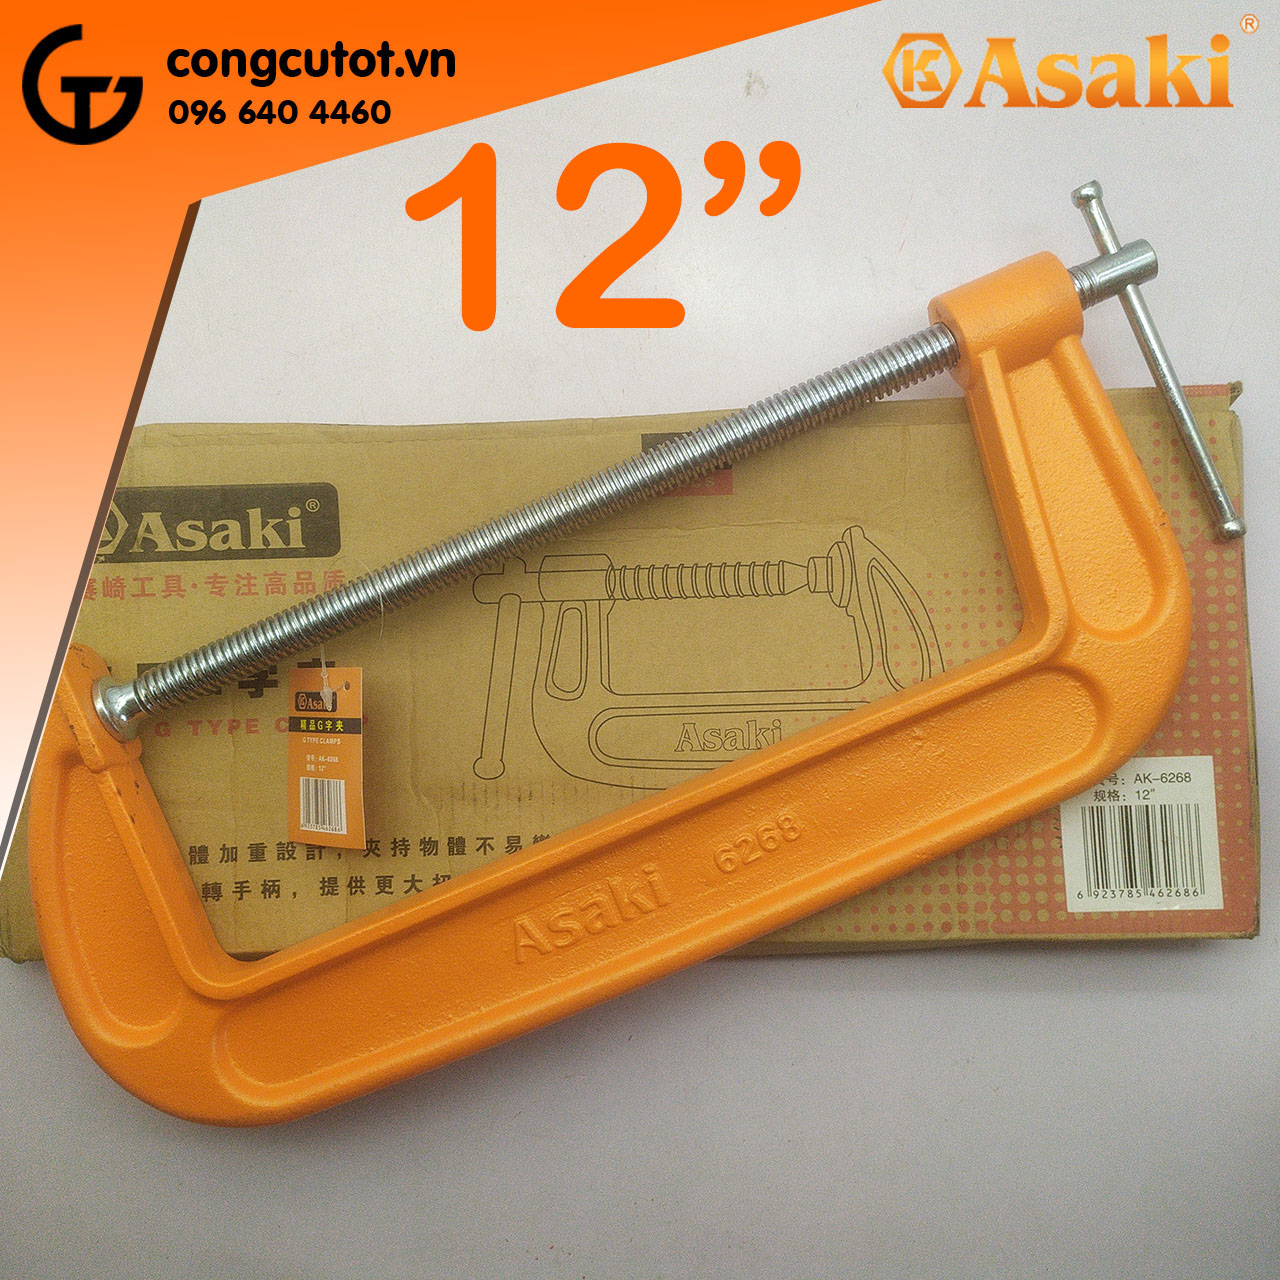 Kích thước khủng 12 inch của cảo chữ C Asaki AK-6268